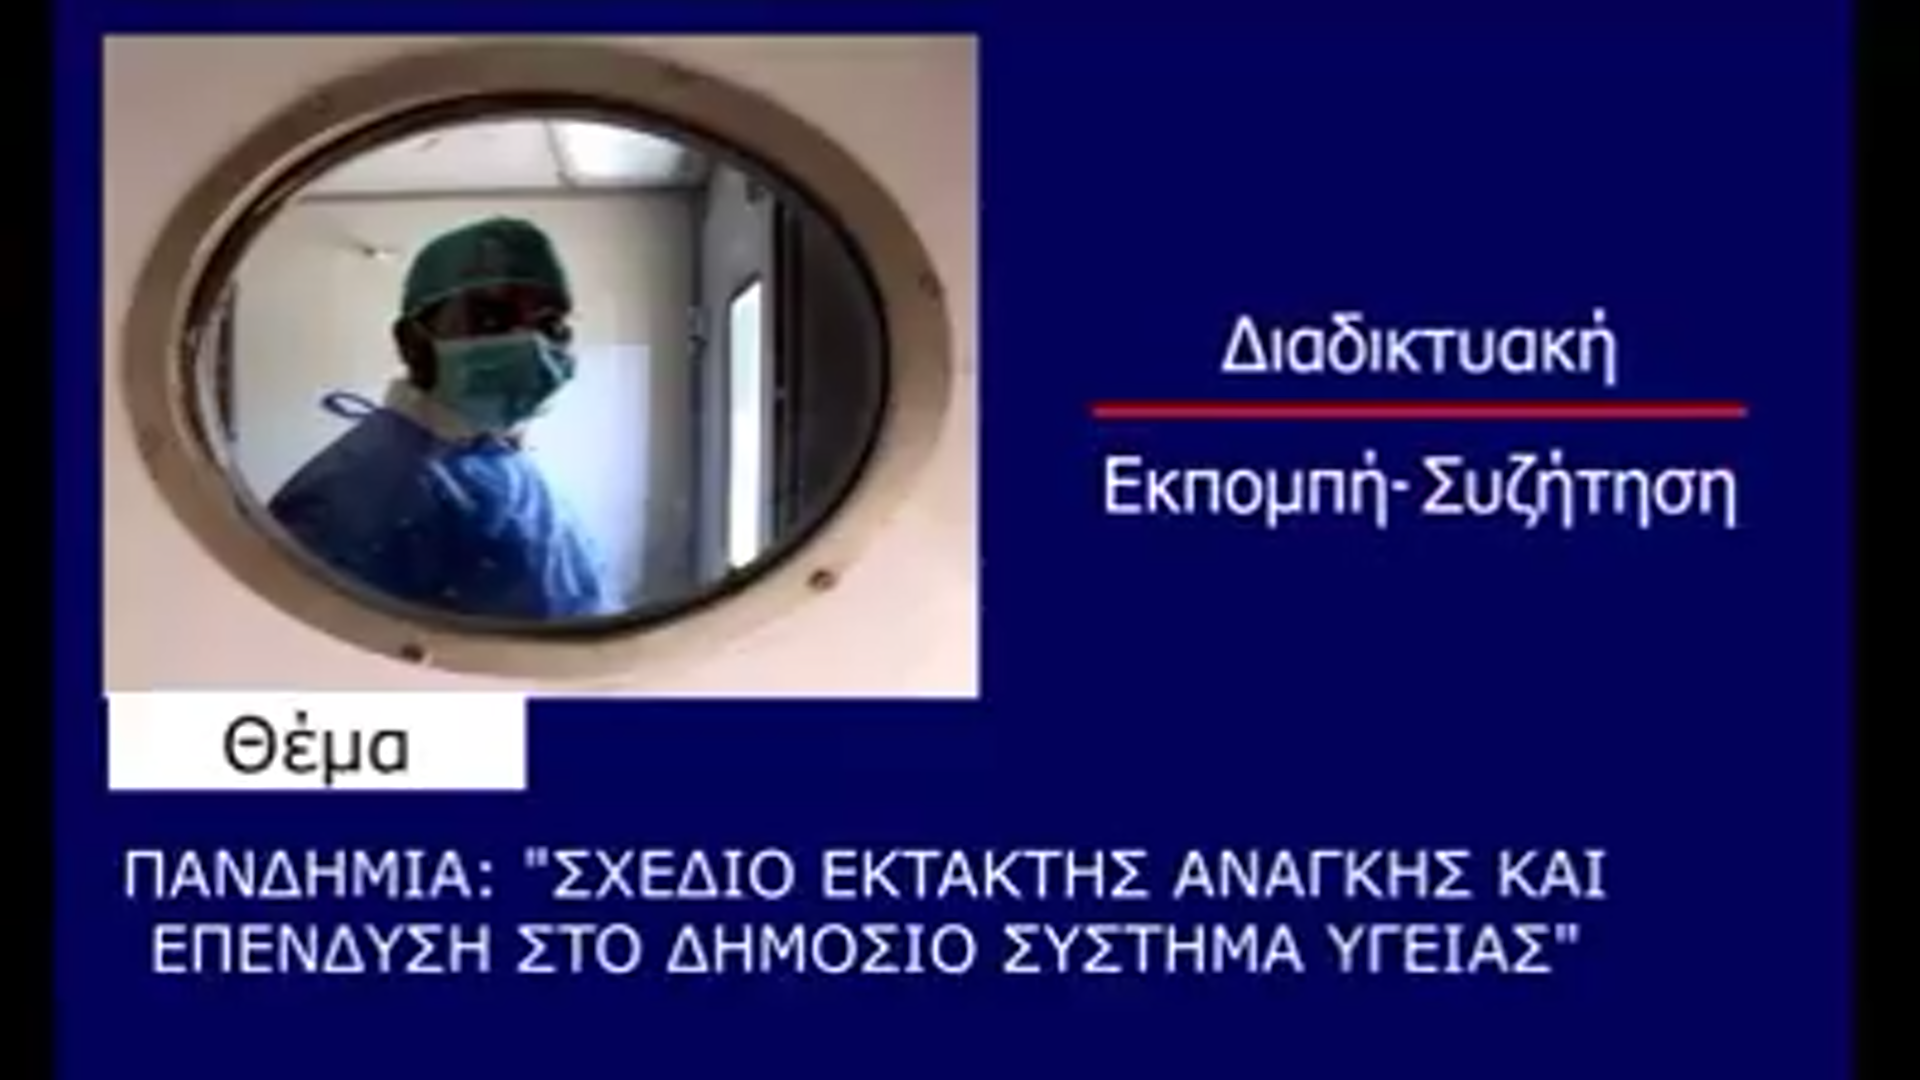 Ανοιχτή διαδικτυακή εκδήλωση των ΝΕ Κρήτης του ΣΥΡΙΖΑ-Προοδευτική Συμμαχία για την πανδημία και το Δημόσιο Σύστημα Υγείας